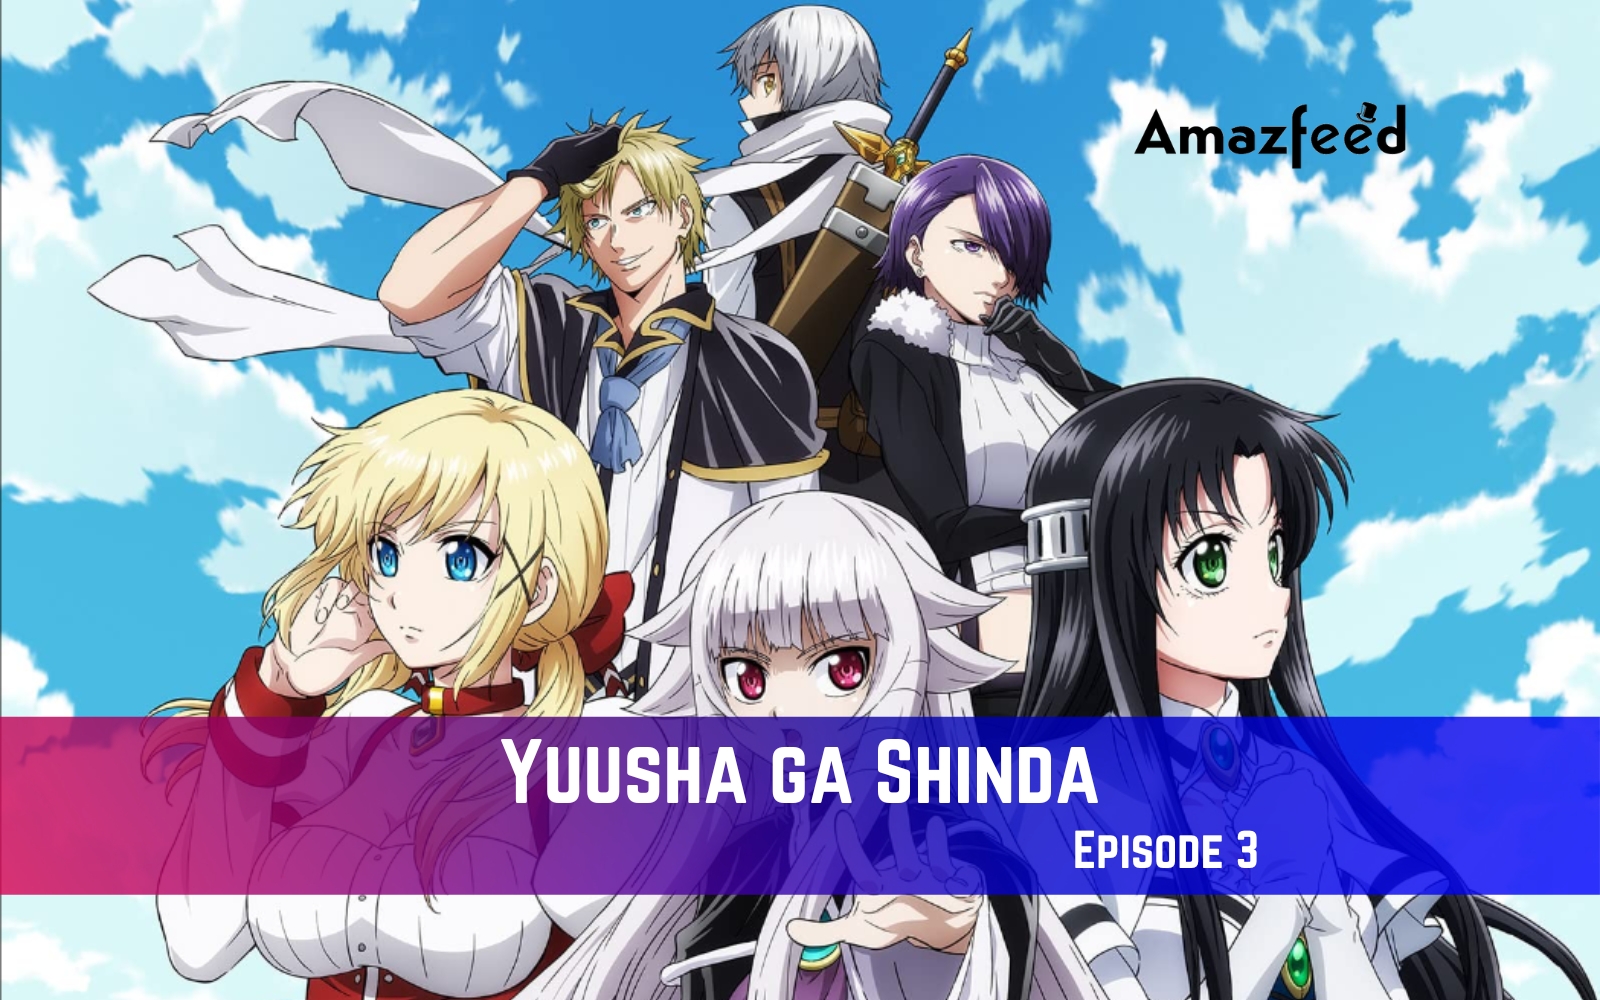 Yuusha ga Shinda Episode 3 Release Date, Spoiler, Recap, Trailer